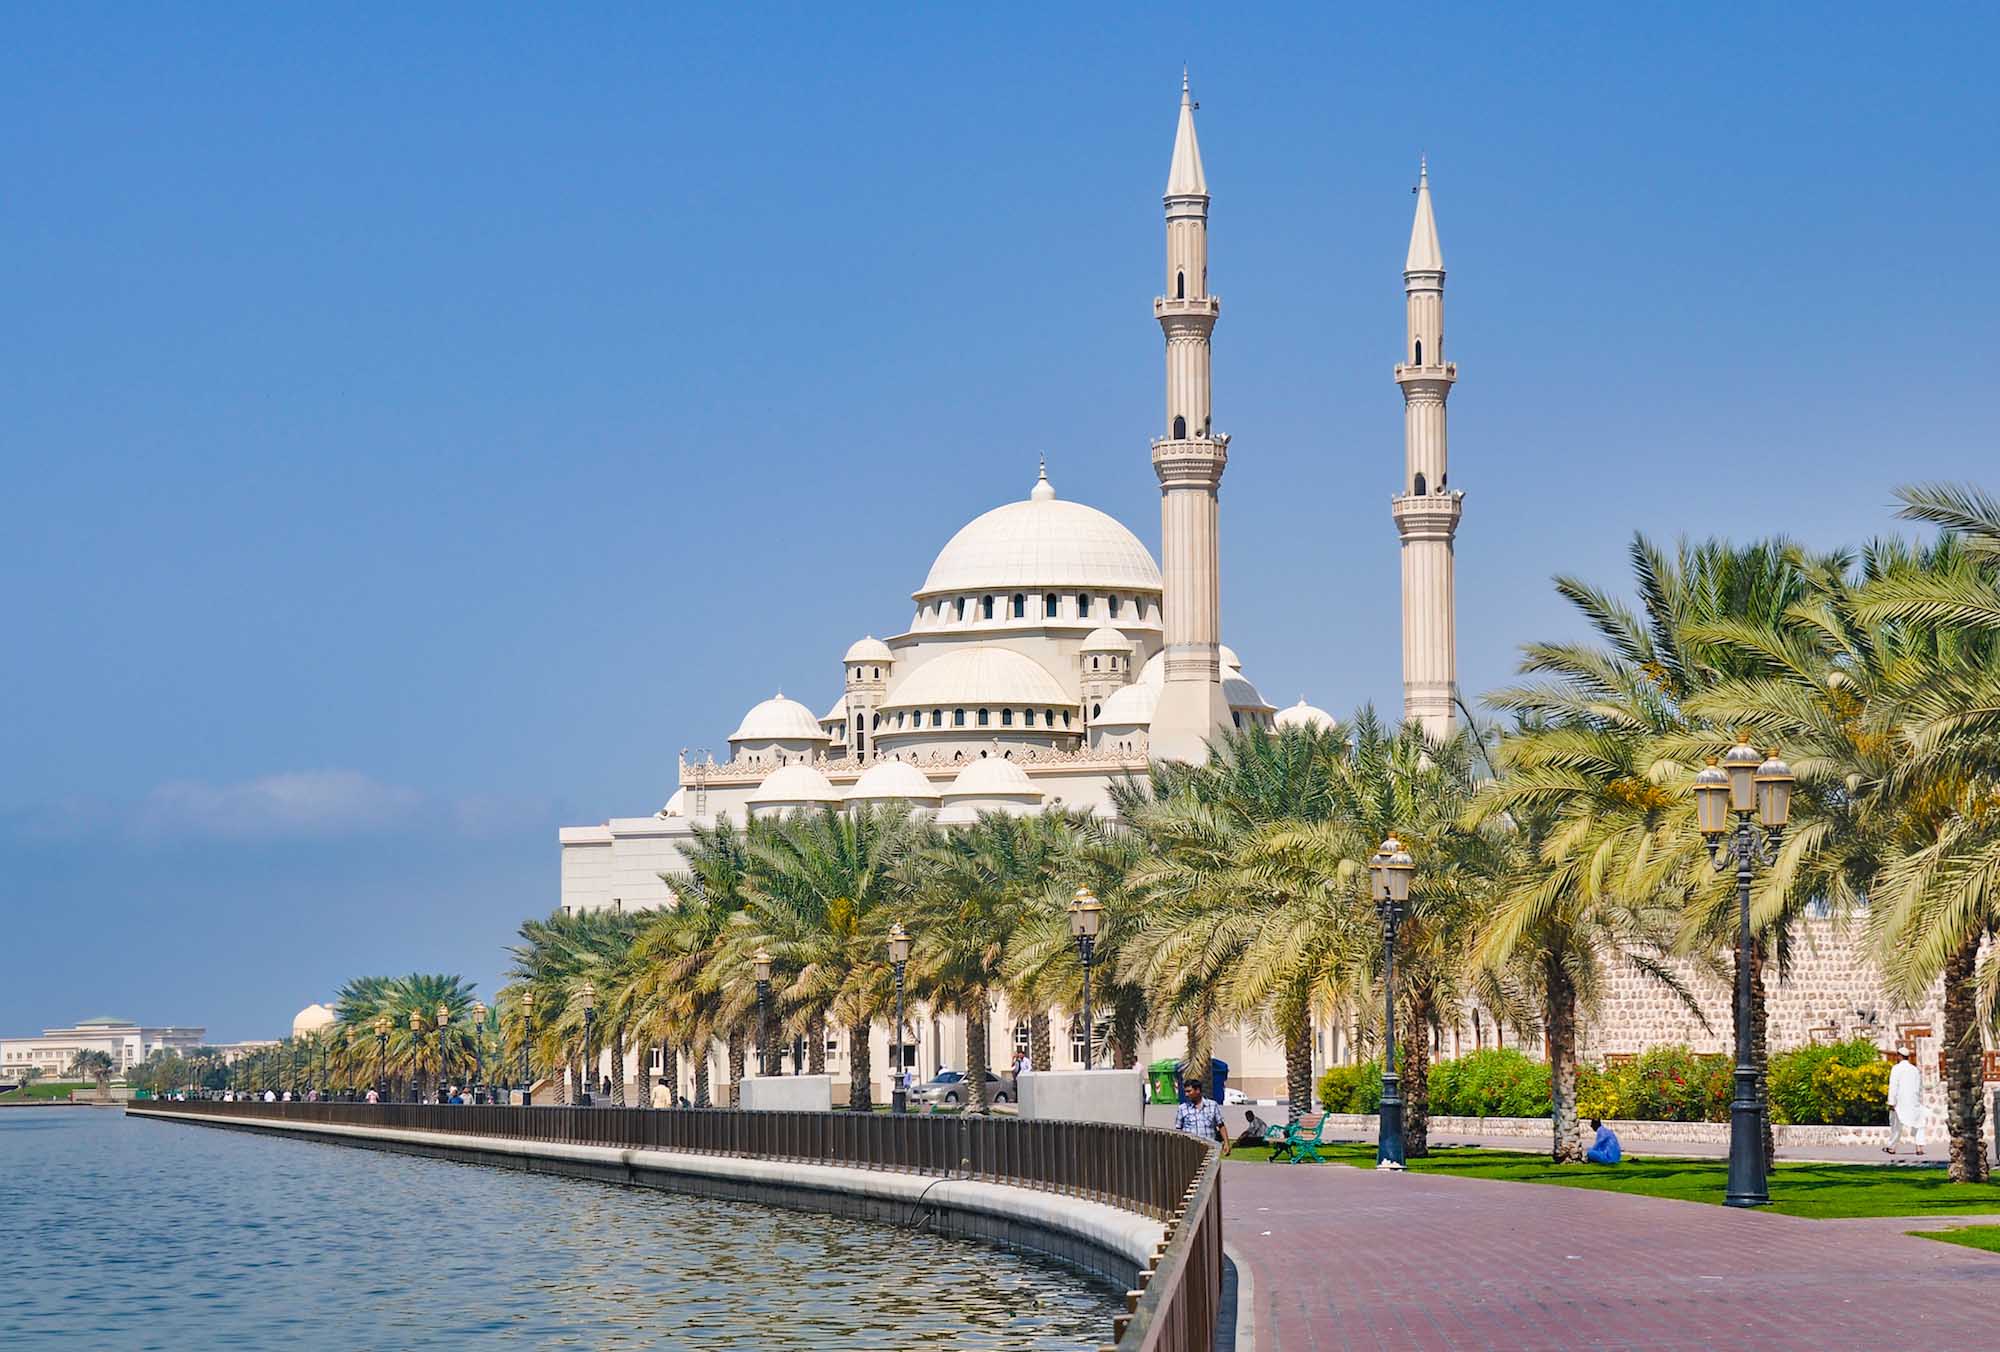 Kaskádová
kupola a dva vysoké minarety – návrh mešity Al Noor bol inšpirovaný Mešitou
sultána Ahmeda, ktorá je známa aj ako Modrá mešita.